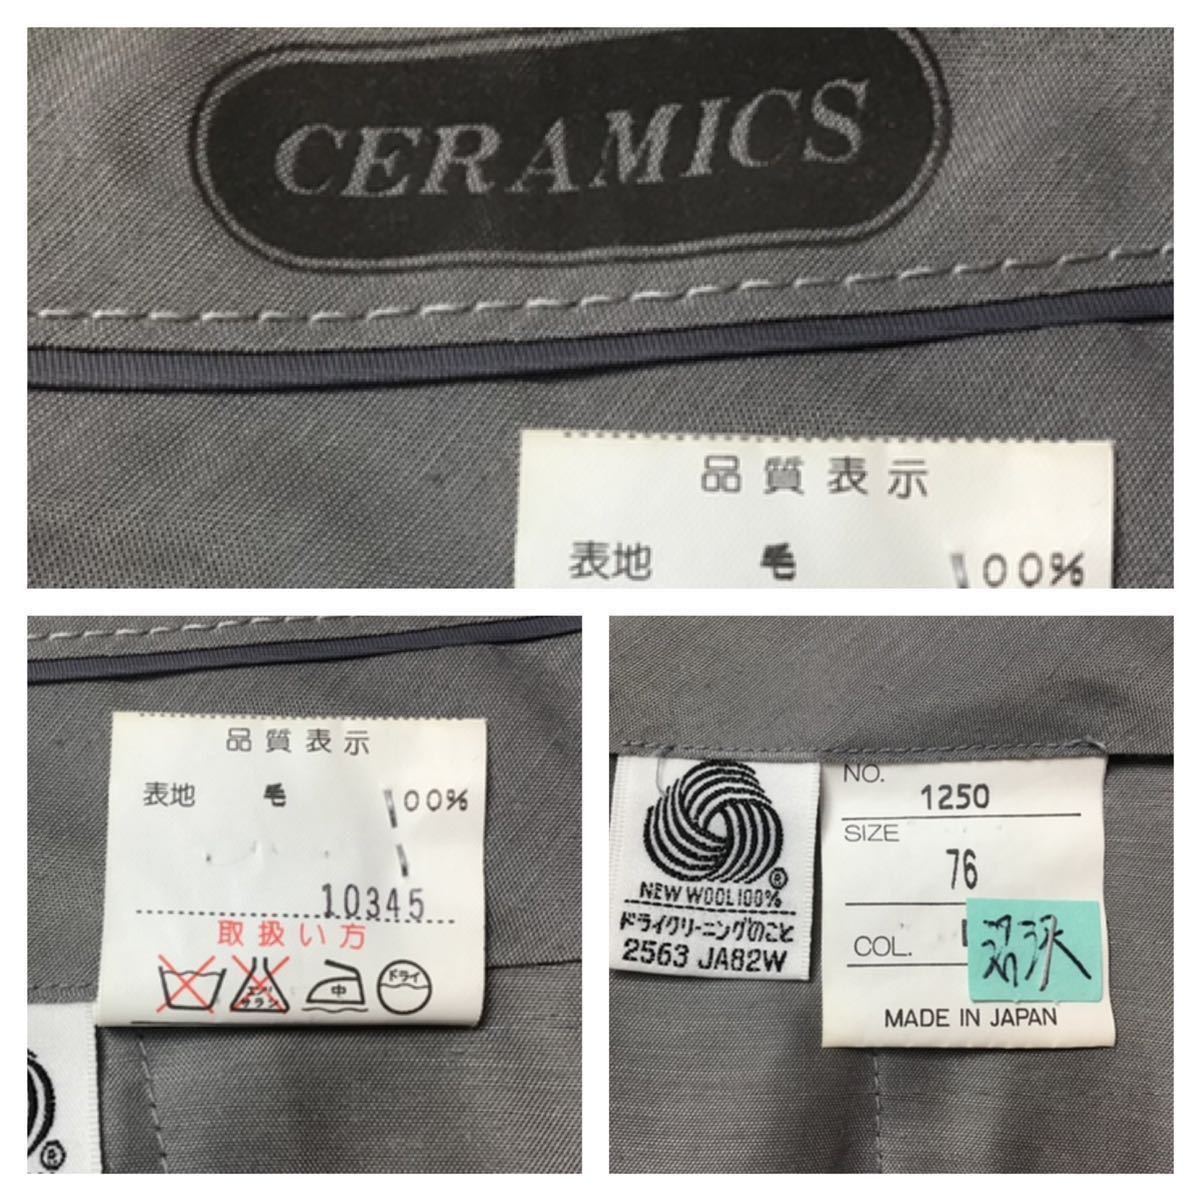 CERAMICS // ウール ツータック 裾ダブル パンツ・スラックス 薄手 (杢ダークグレー) サイズ 76cm_画像7